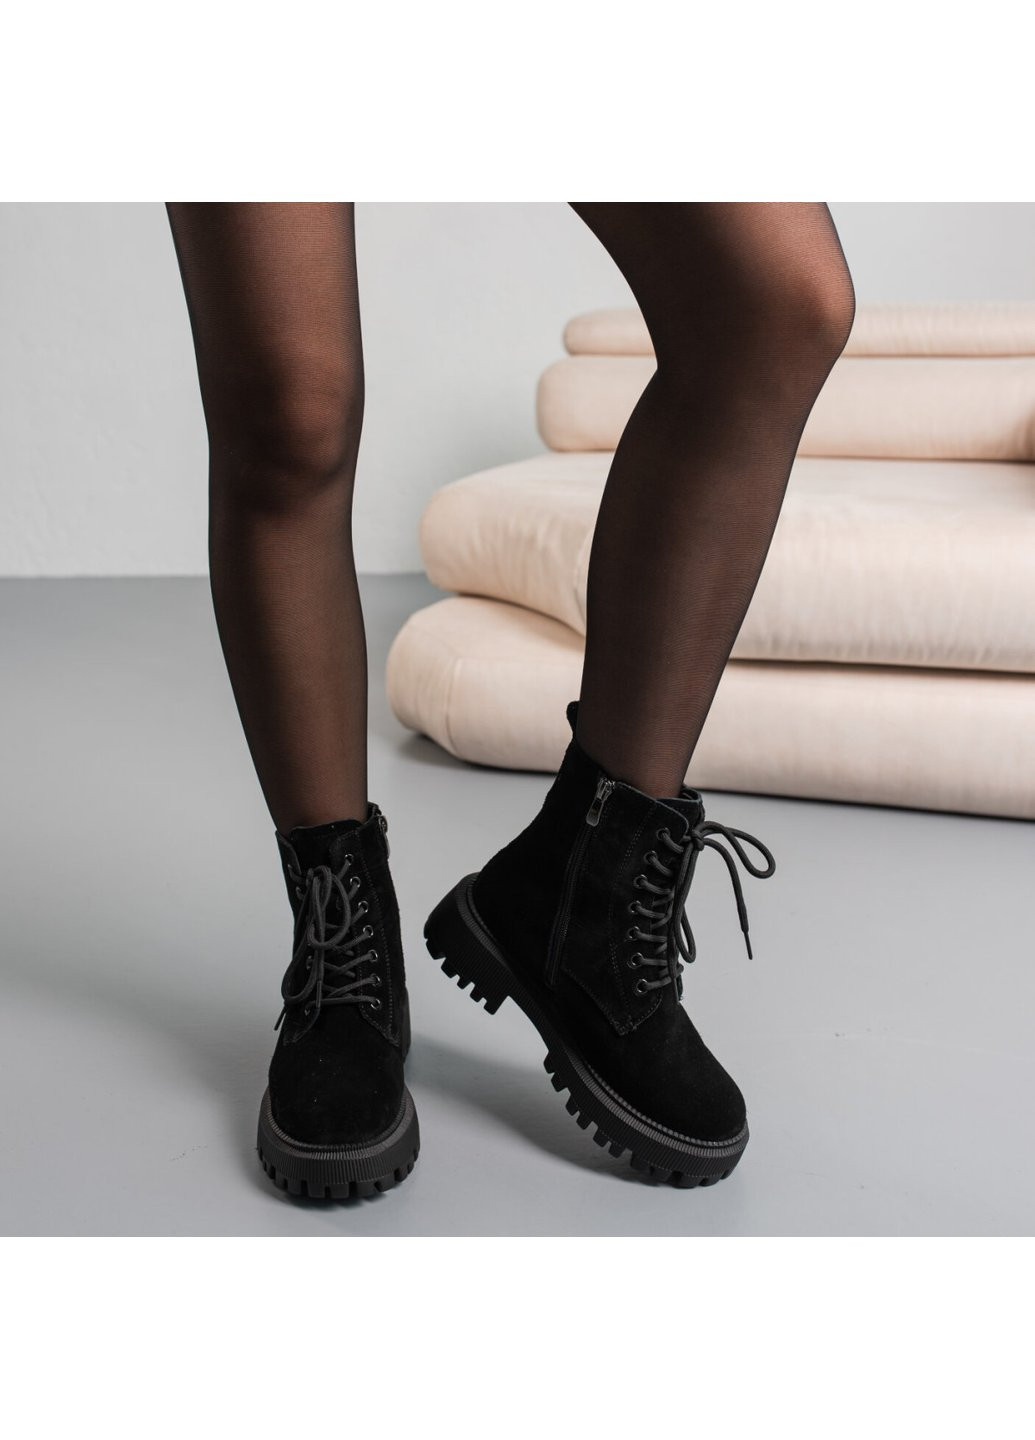 Зимние ботинки женские зимние gina 3856 235 черный Fashion из натуральной замши